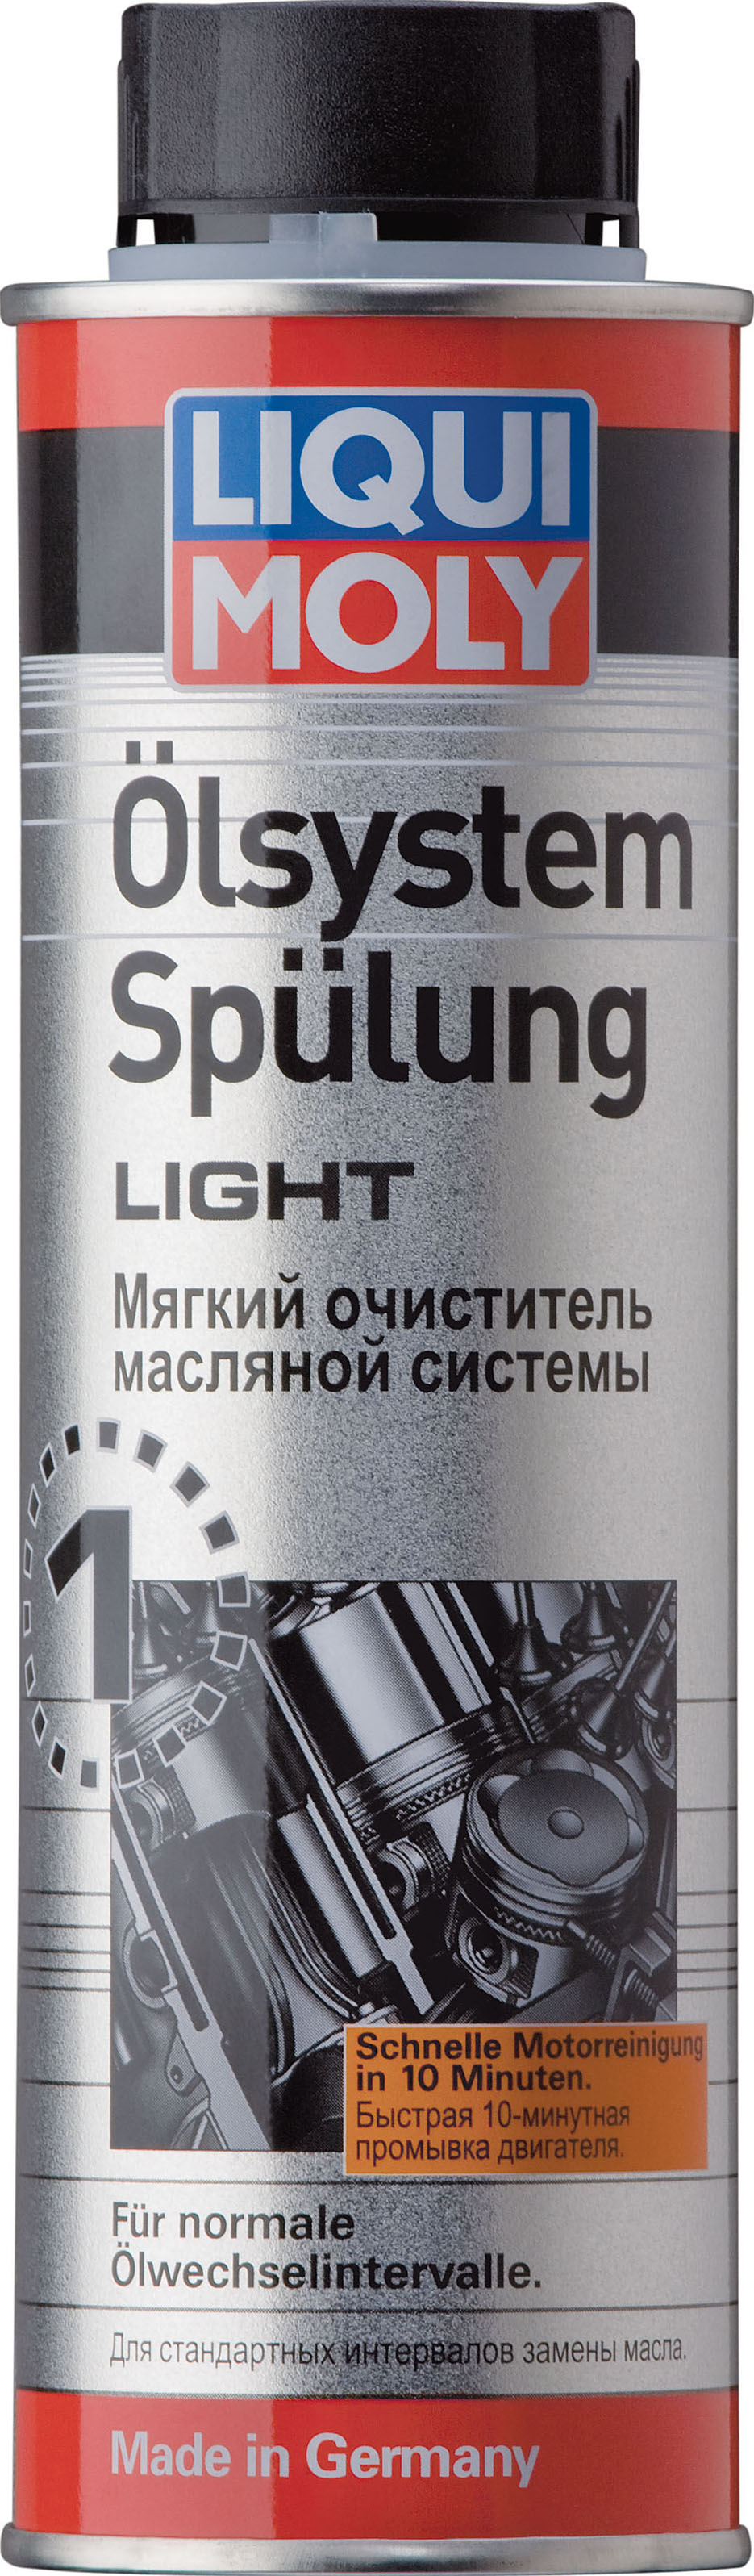 Мягкая промывка масляной системы Oilsystem Spulung Light, 300мл - Liqui Moly 7590